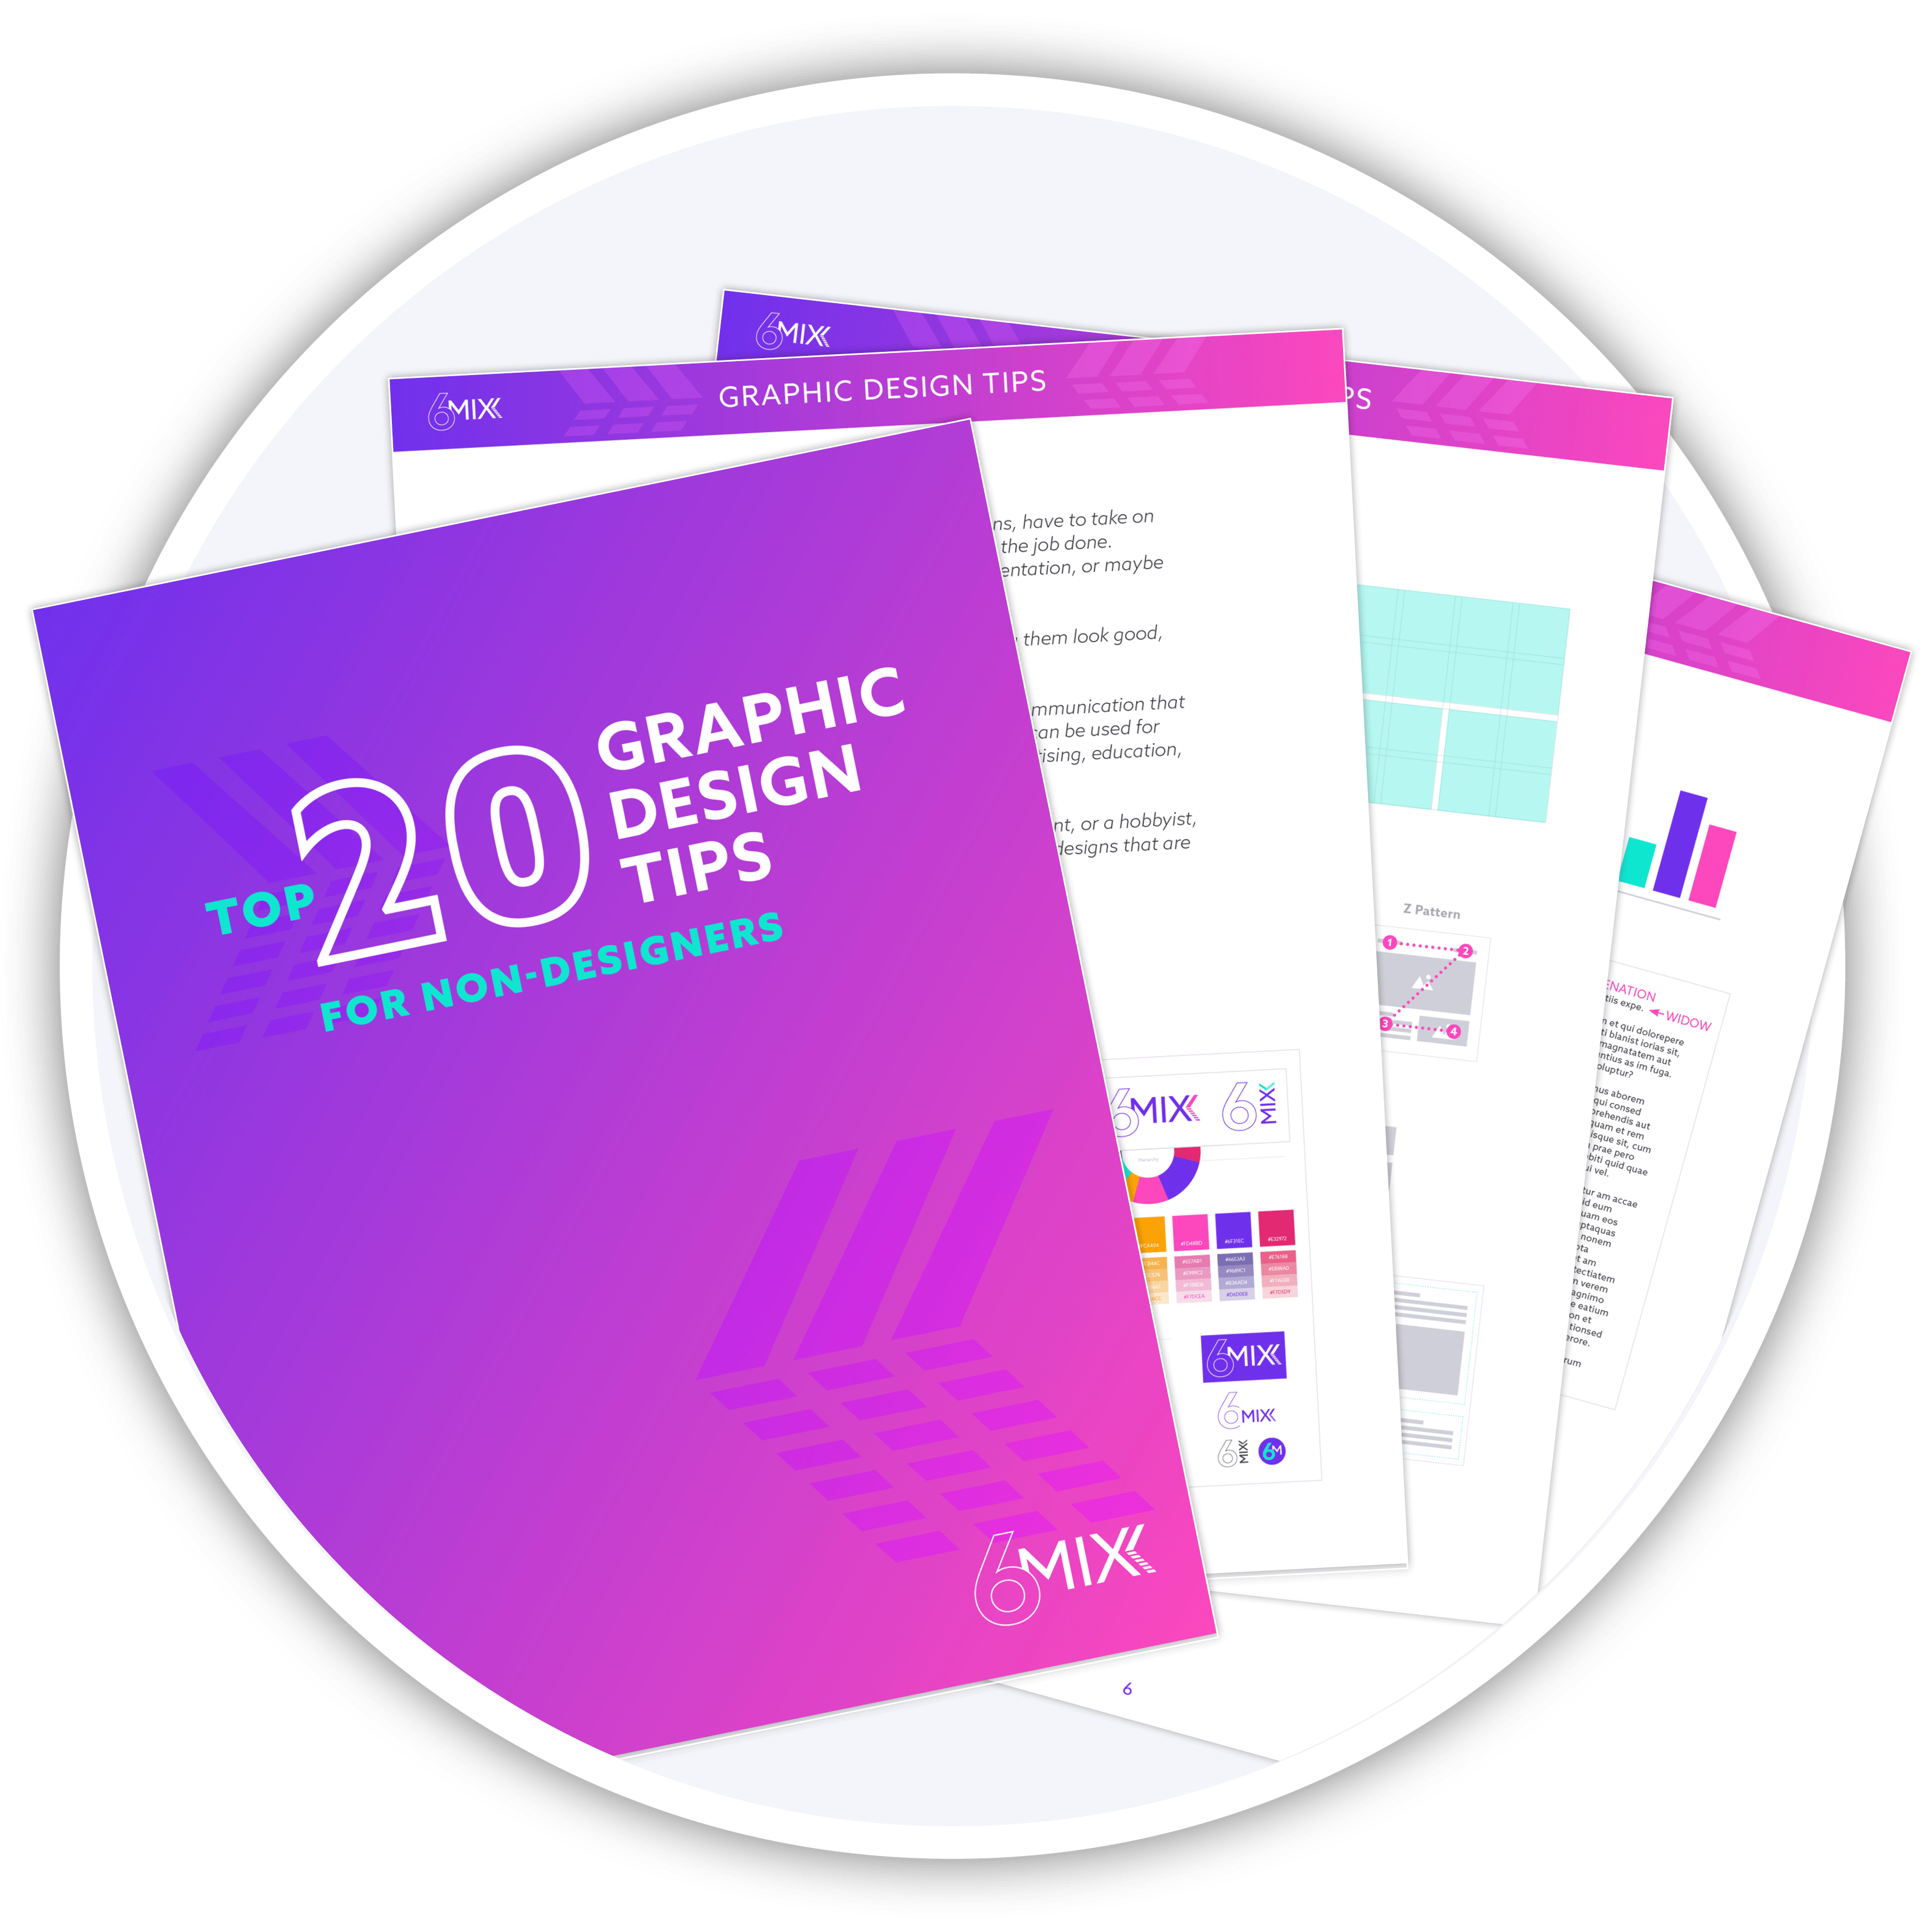 20 Graphic Design Tips For Non Designers 6mixx 5842